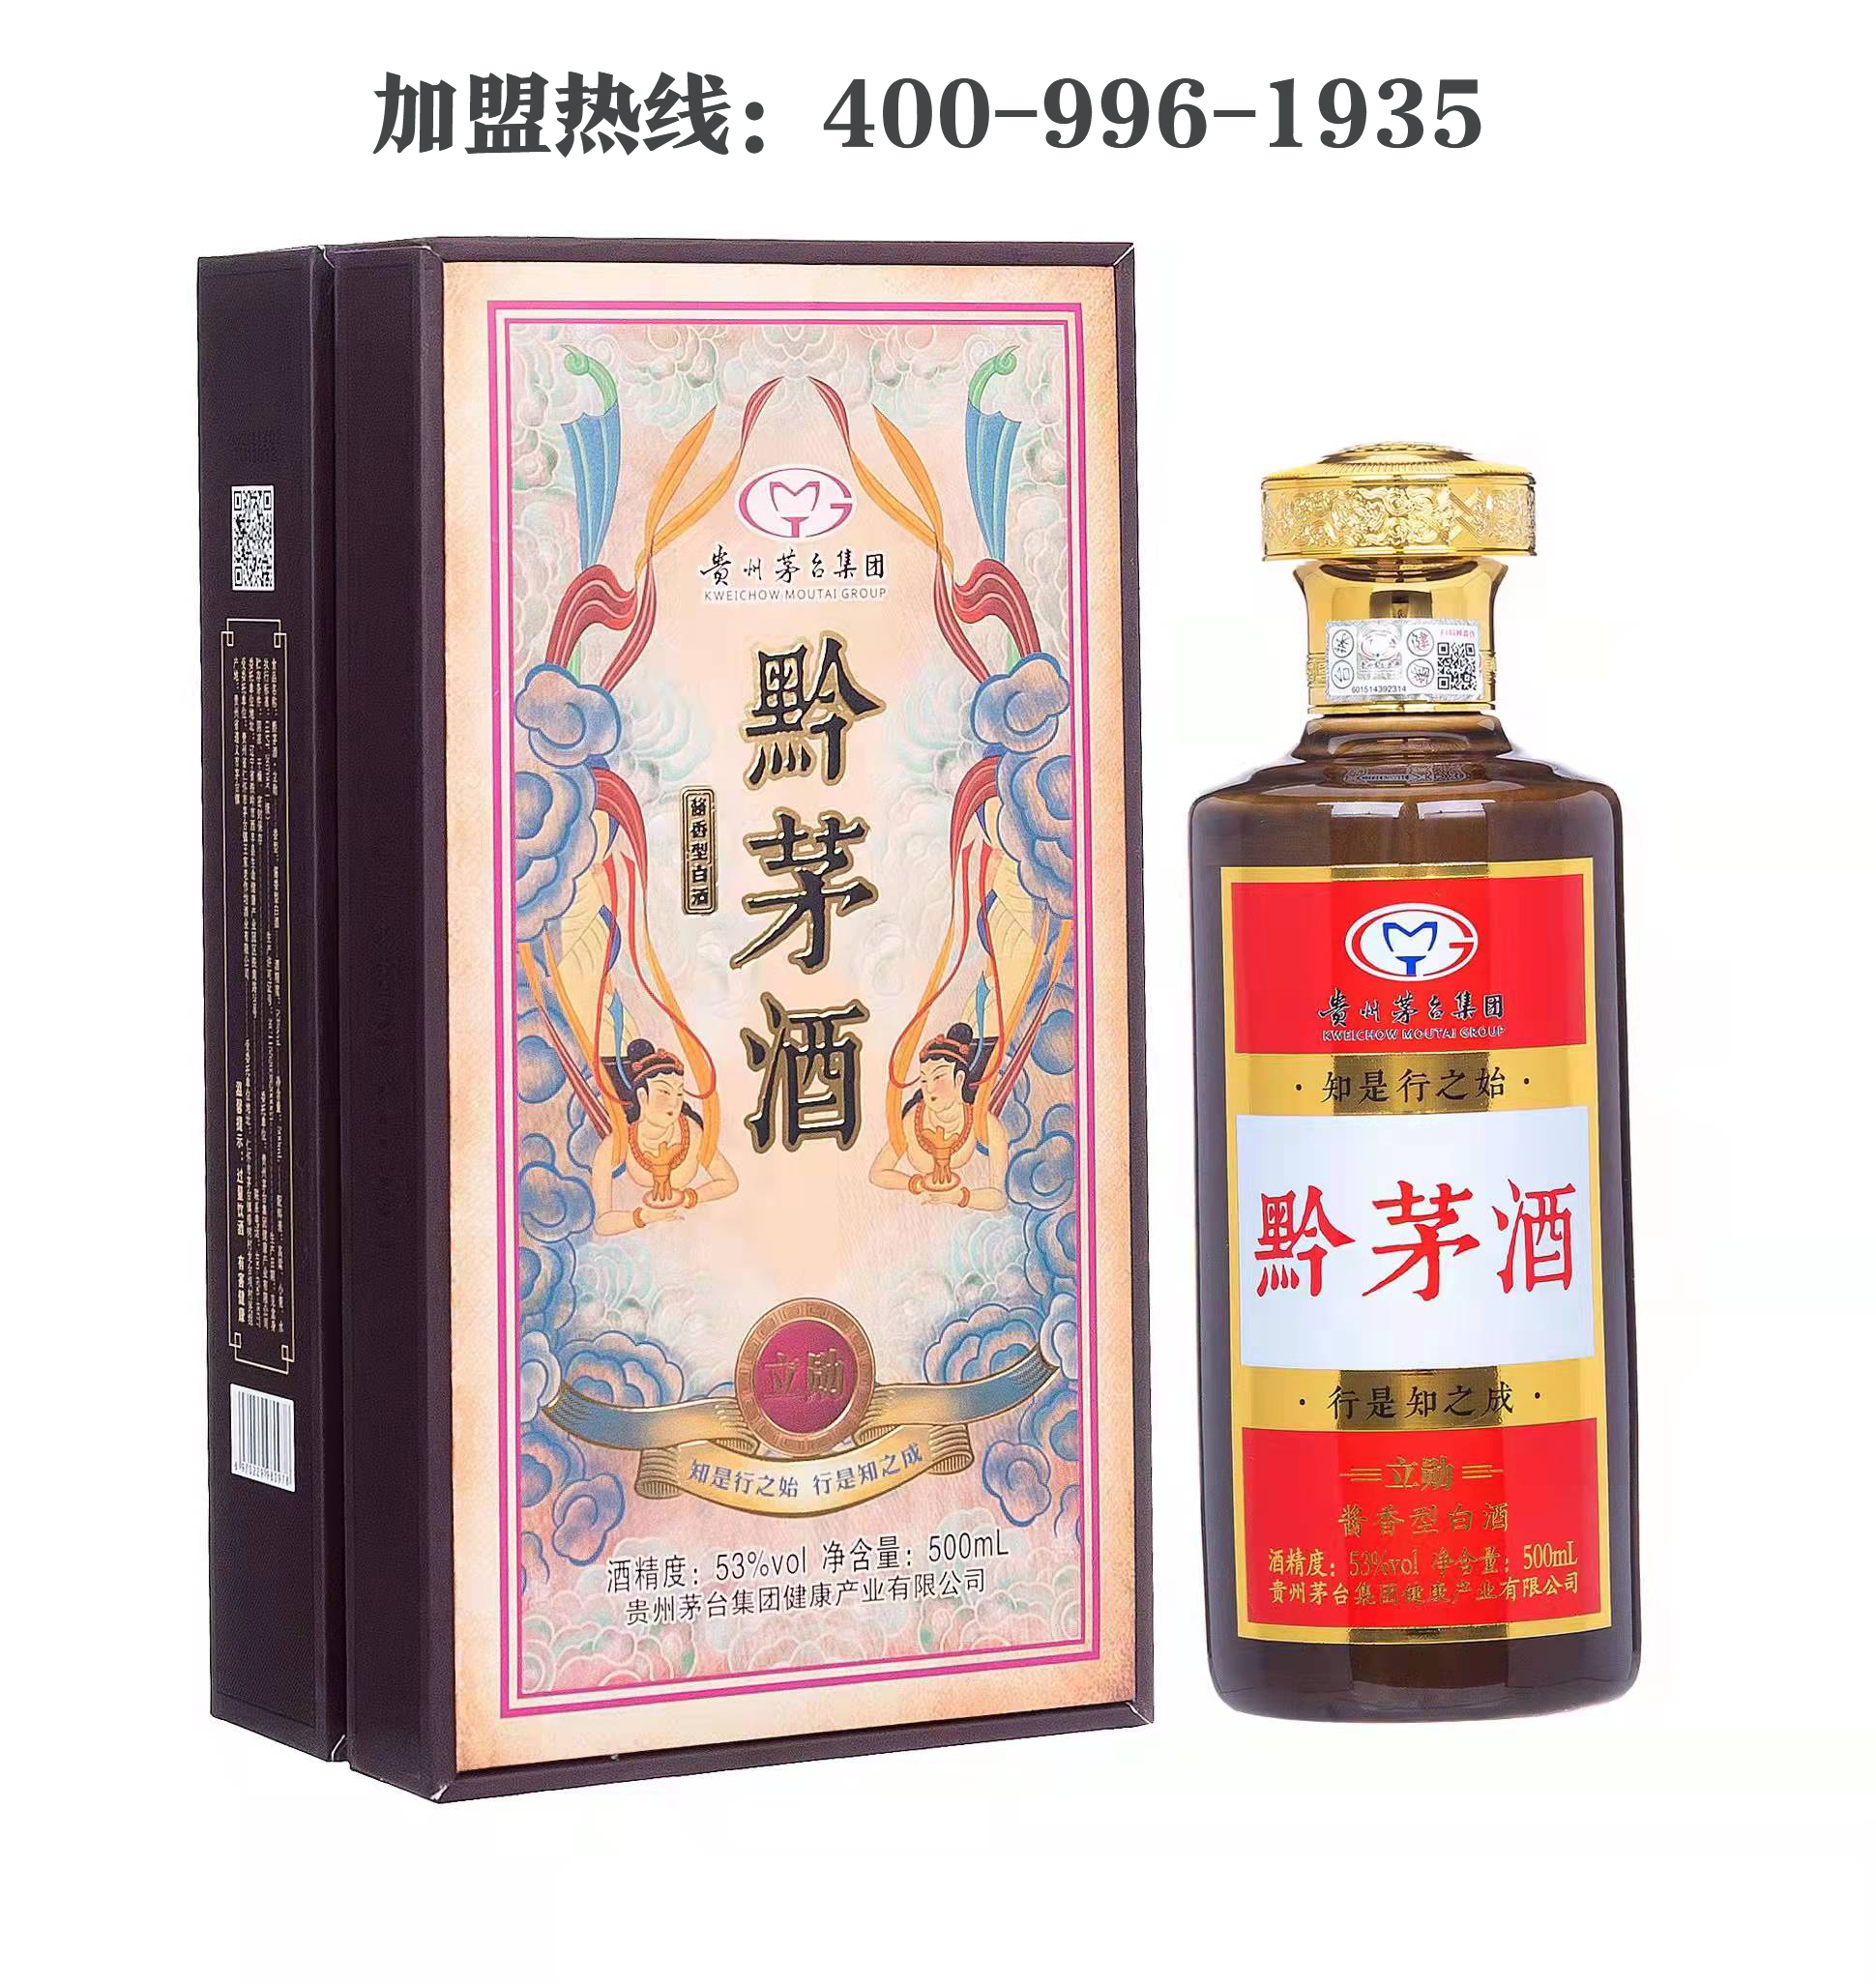 贵州茅台集团健康产业黔茅酒打造酱酒新头部品牌